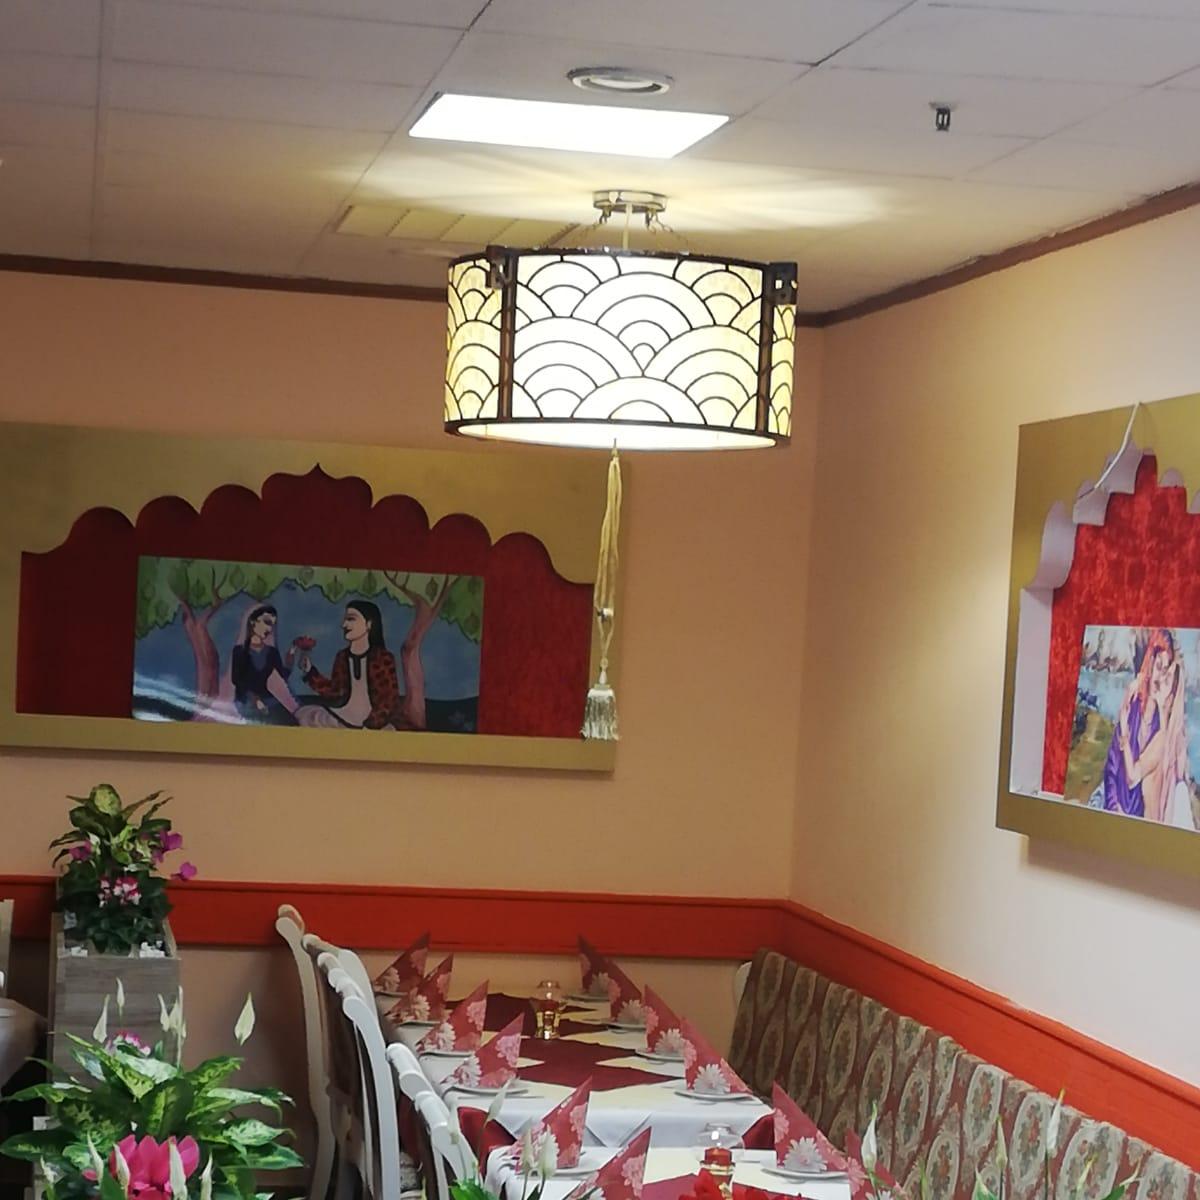 Restaurant "Royal India Indische Restaurant" in Ansbach